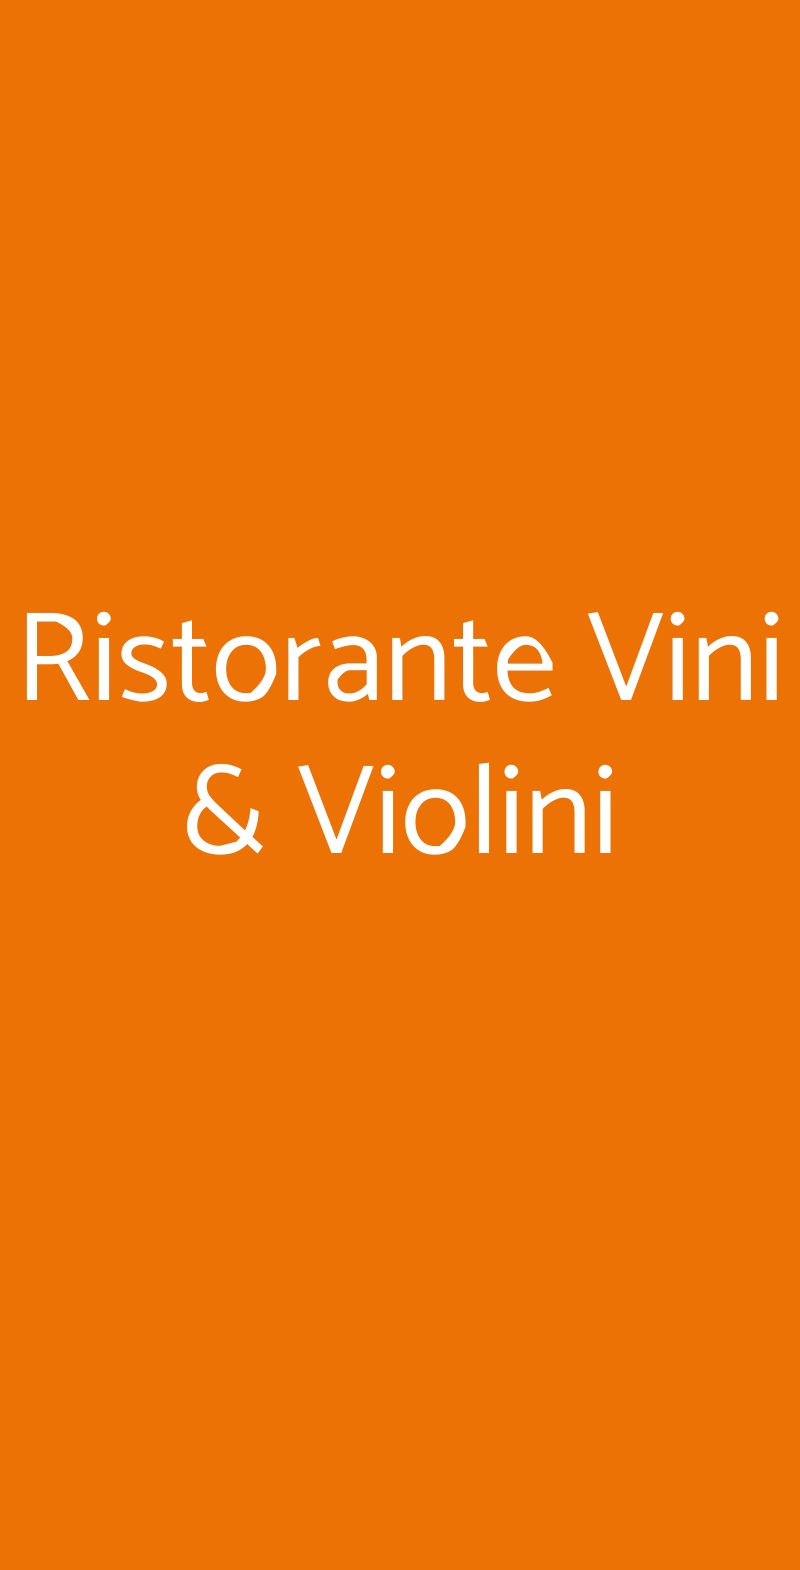 Ristorante Vini & Violini Monchiero menù 1 pagina